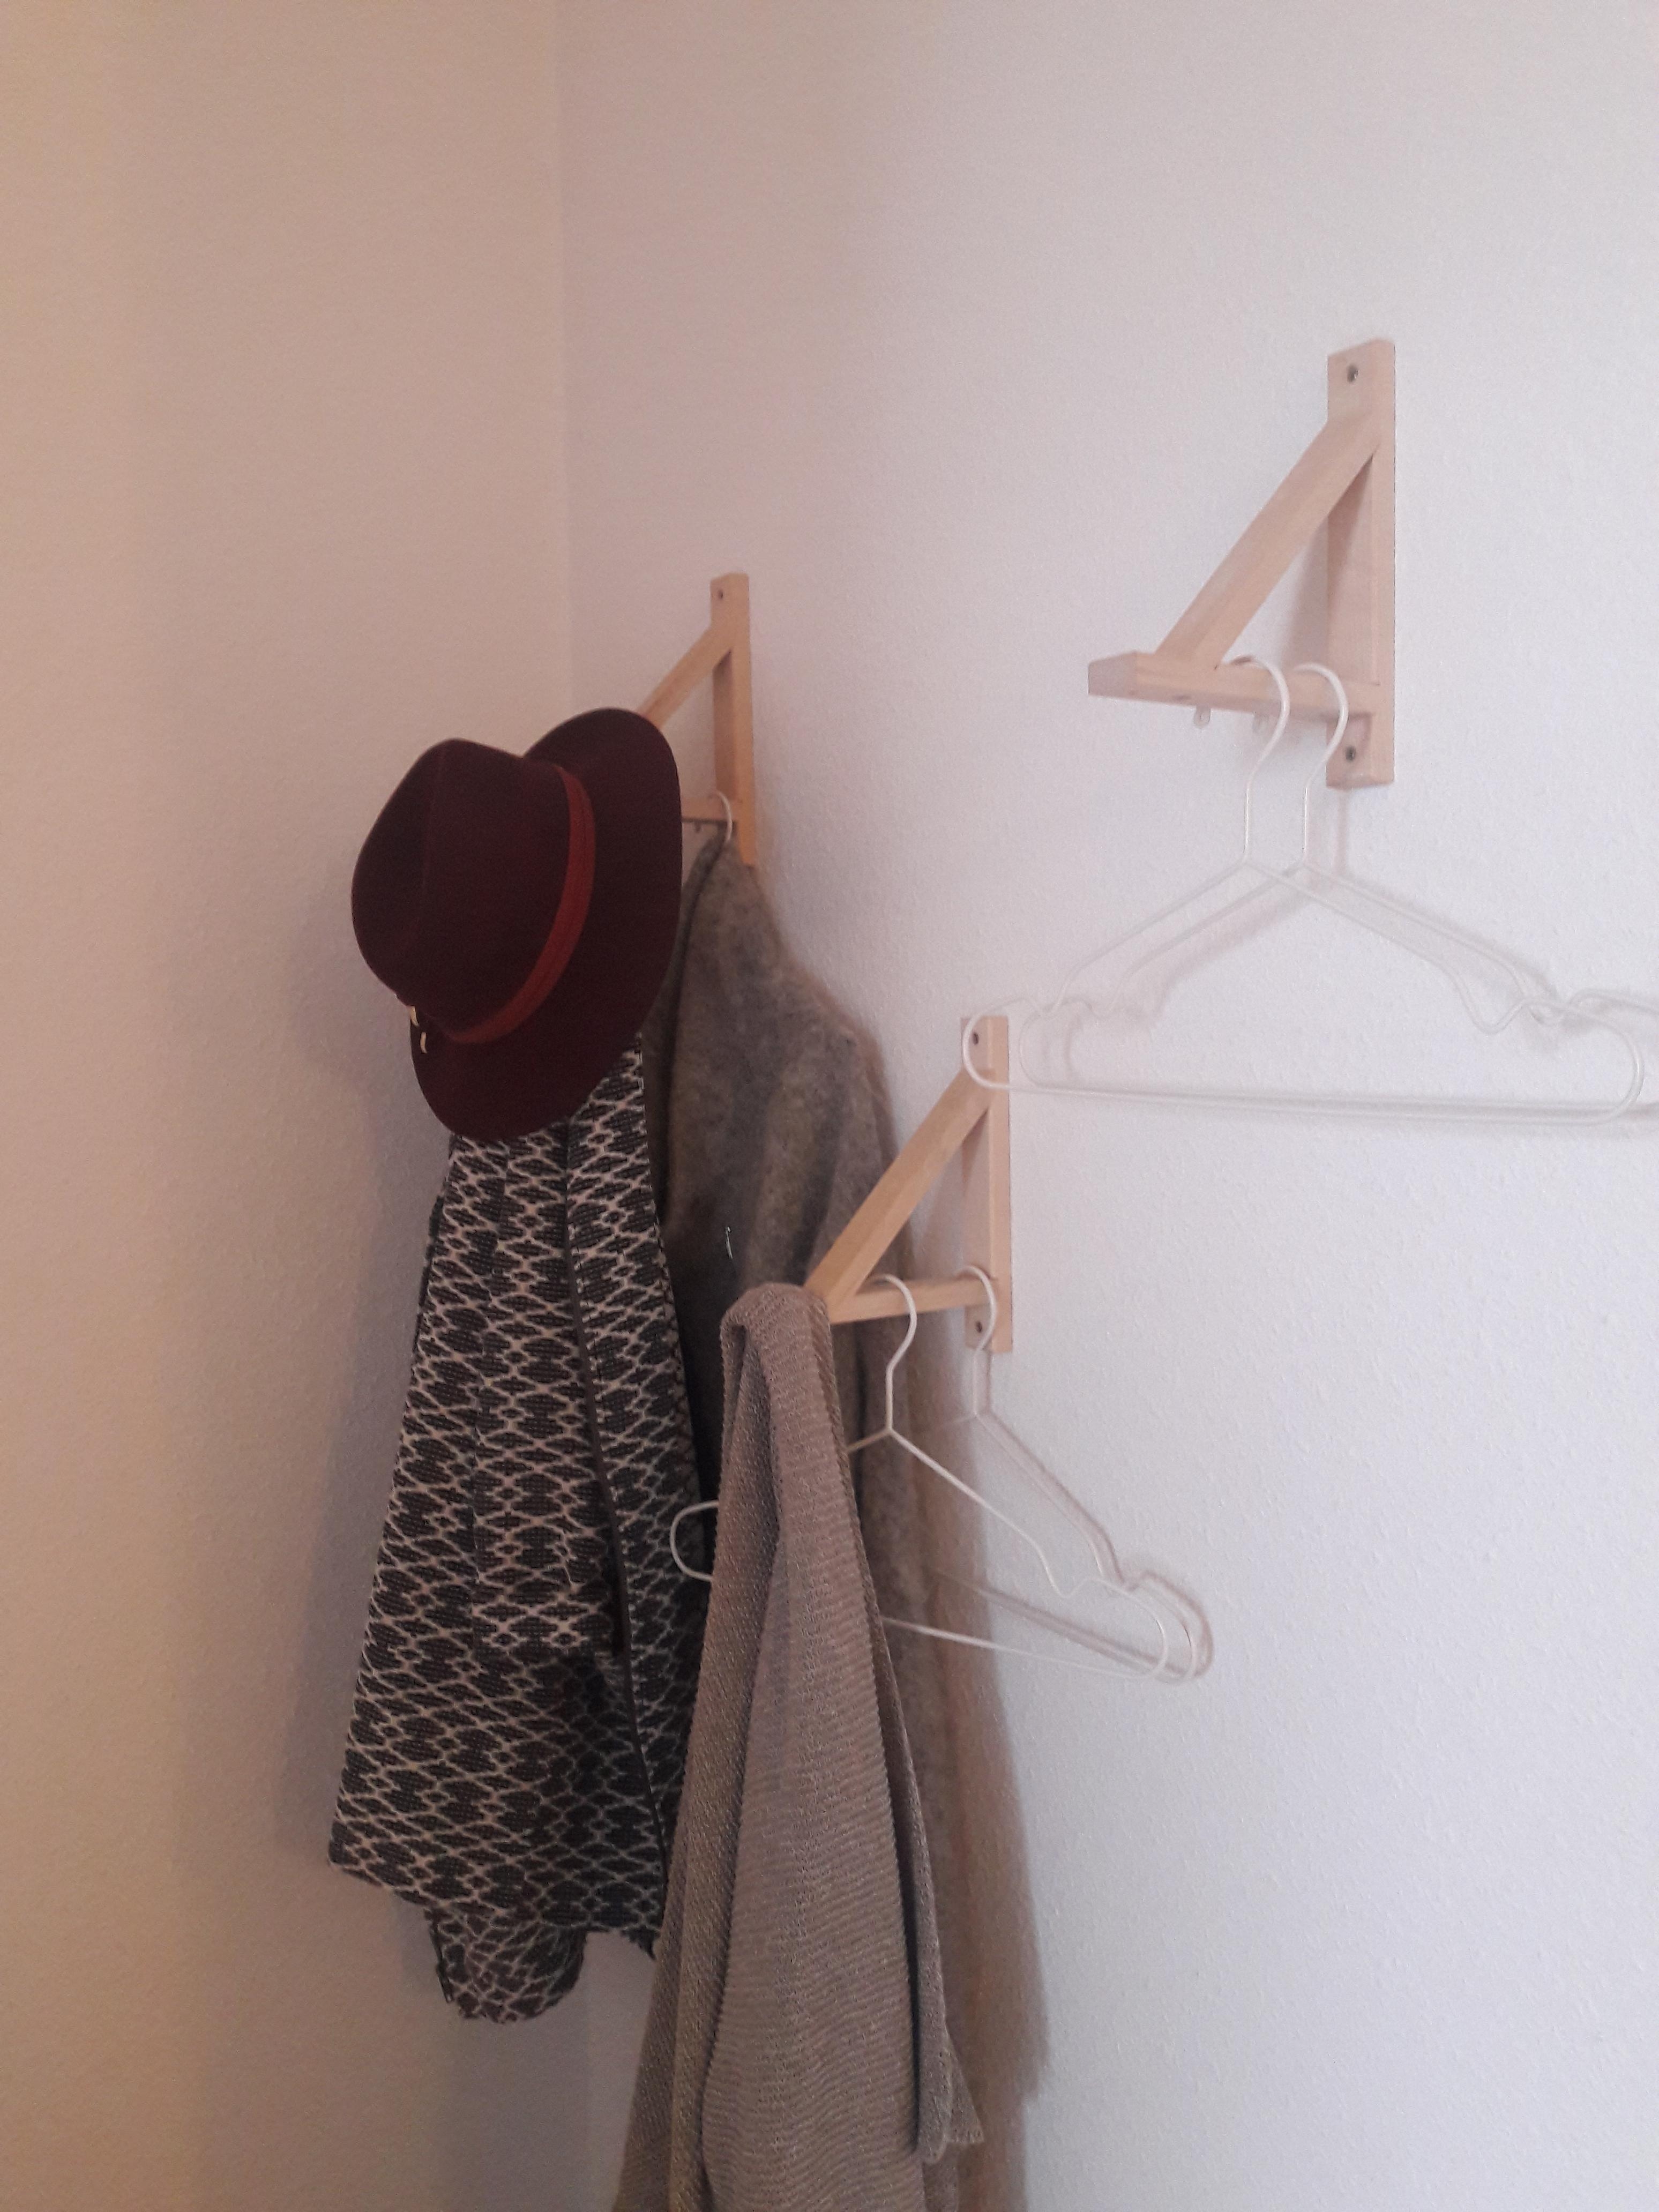 Garderobe für knappes Budget #regalträger #halterung #konsole #meinzuhause #umfunktioniert #minimalistisch #studentlife